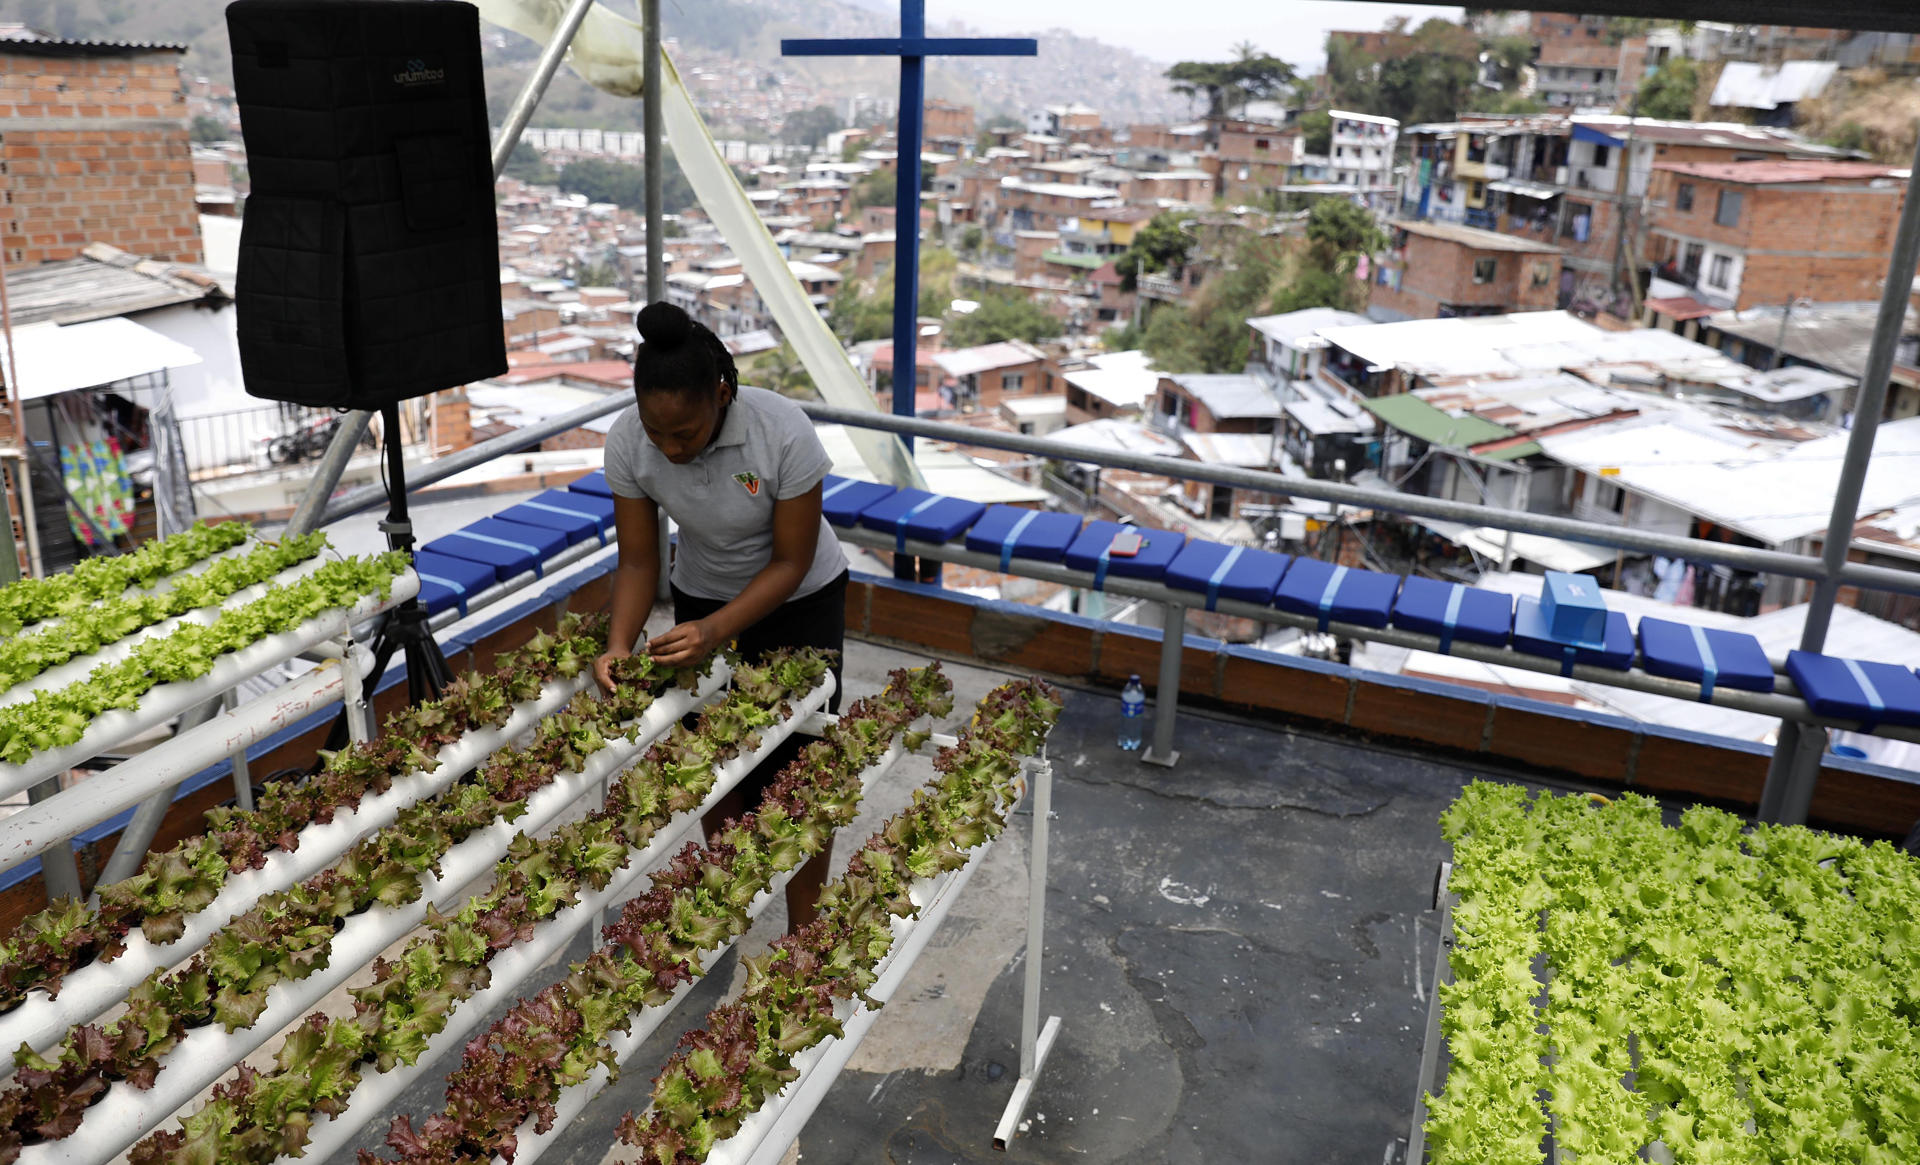 Transformación esperanzadora en Medellín después de estar marcada por la violencia